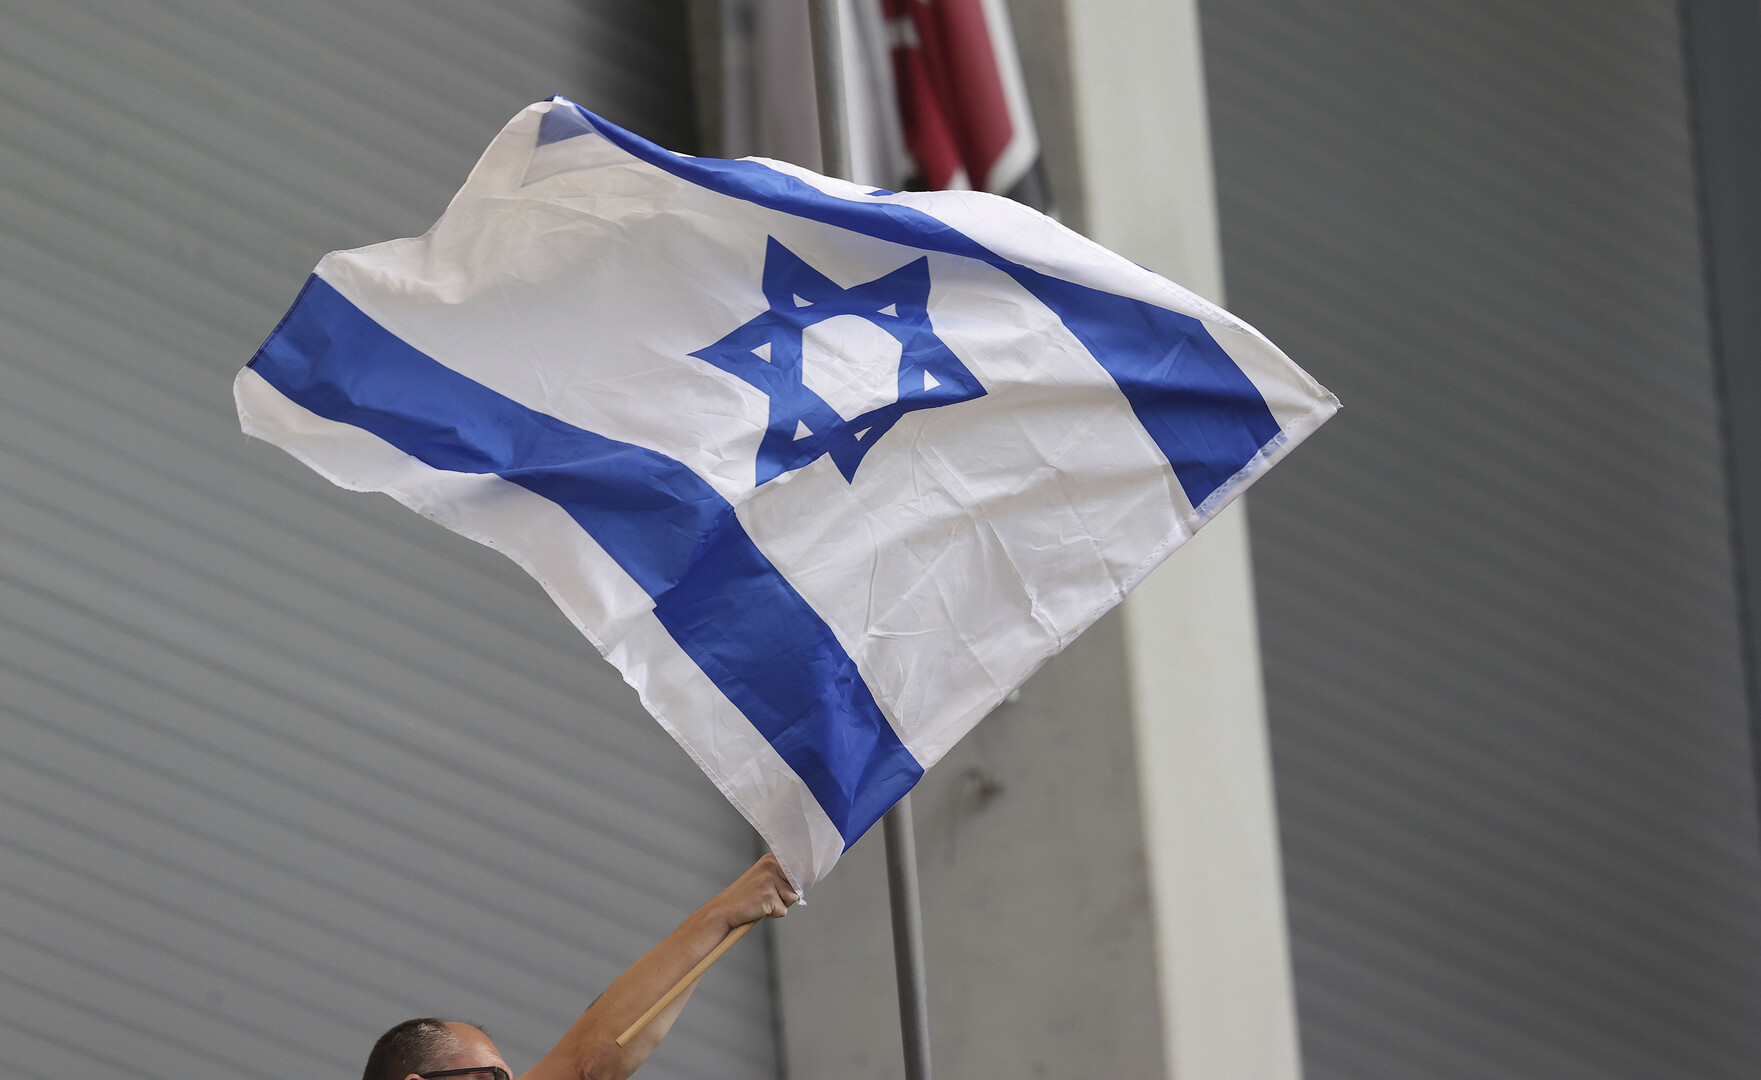 نتنياهو يحاول تجنب منح حقيبة وزارة الدفاع لرئيس حزب الصهيونية الدينية